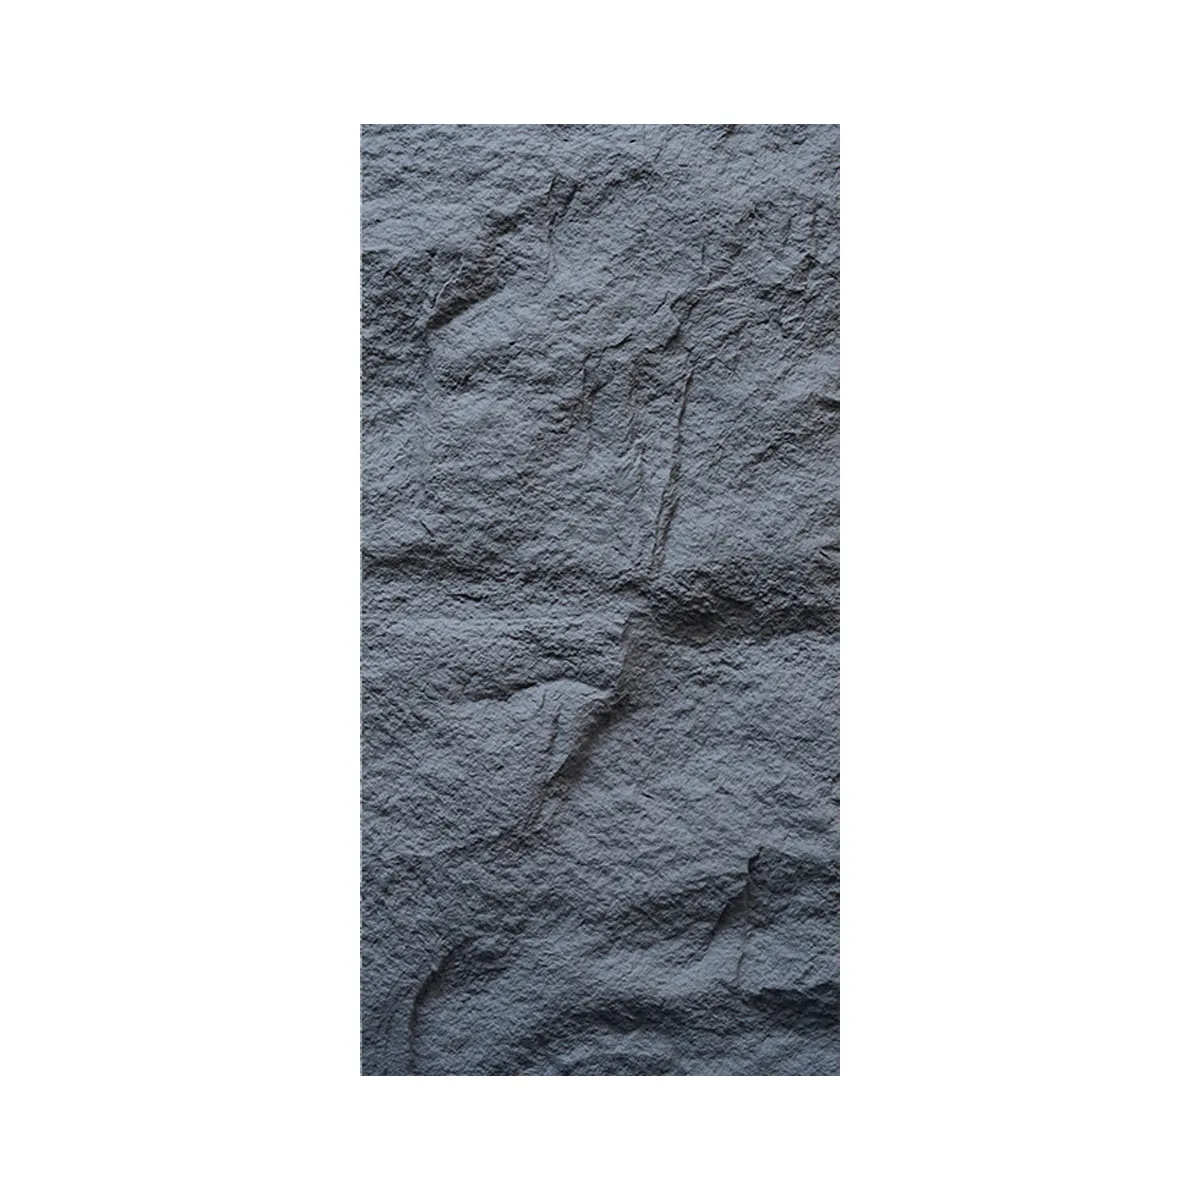 Qualitate lapides PU avantiada vendita calda all'aperto impermeabile cultura Pu pietra 3d decorazione di pietra pannello di parete in pietra